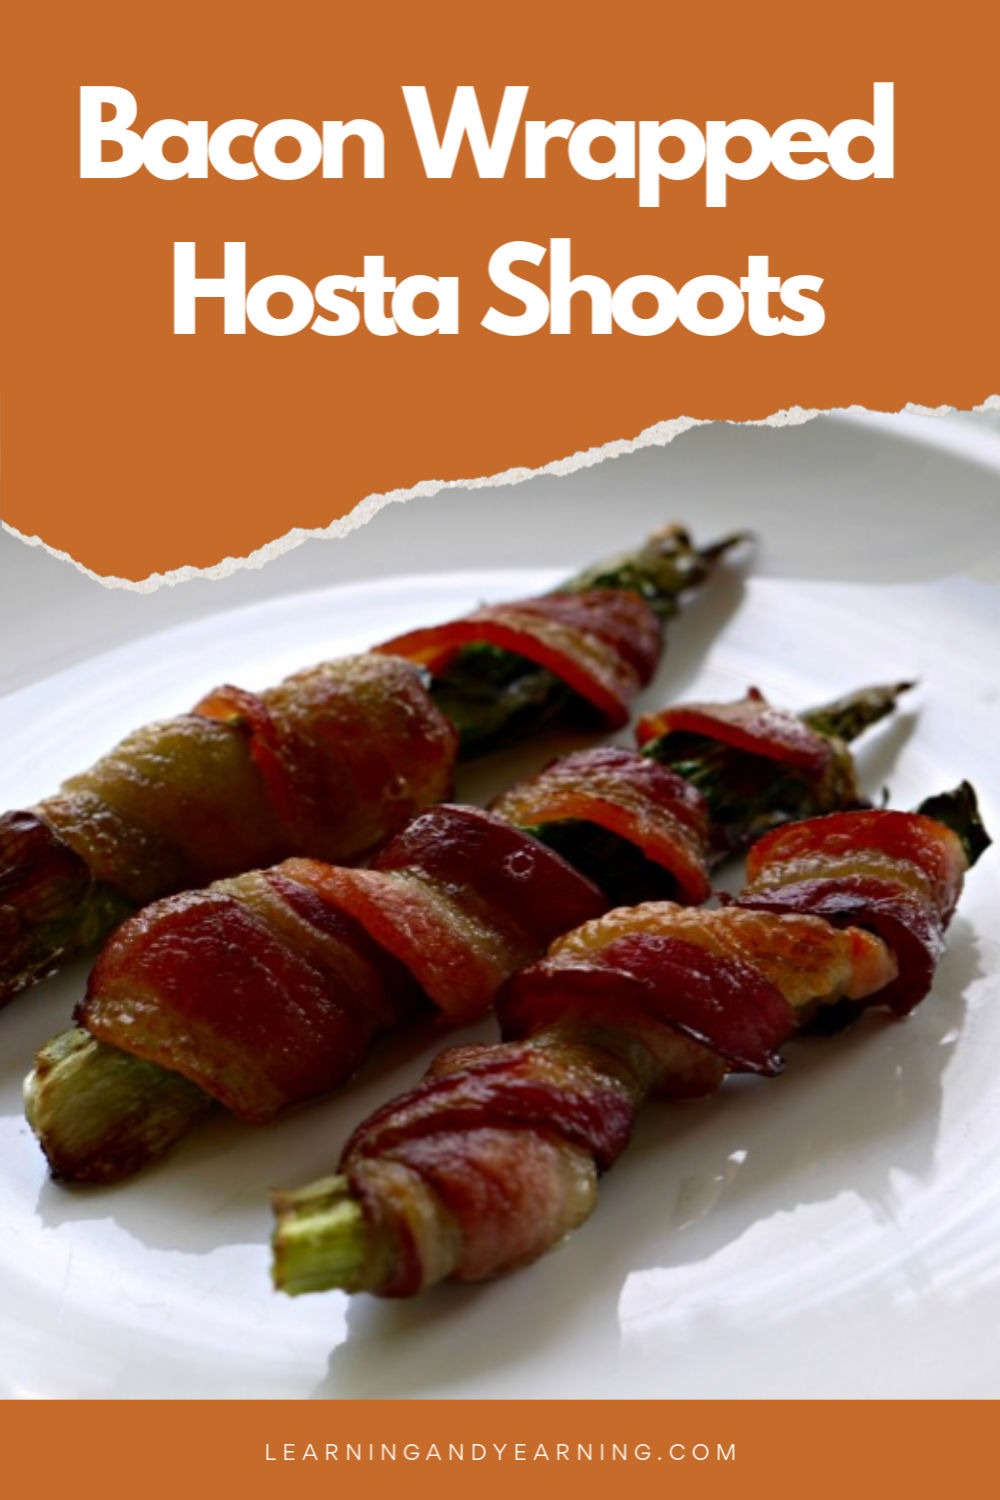 Delicious bacon wrapped hosta shoots!